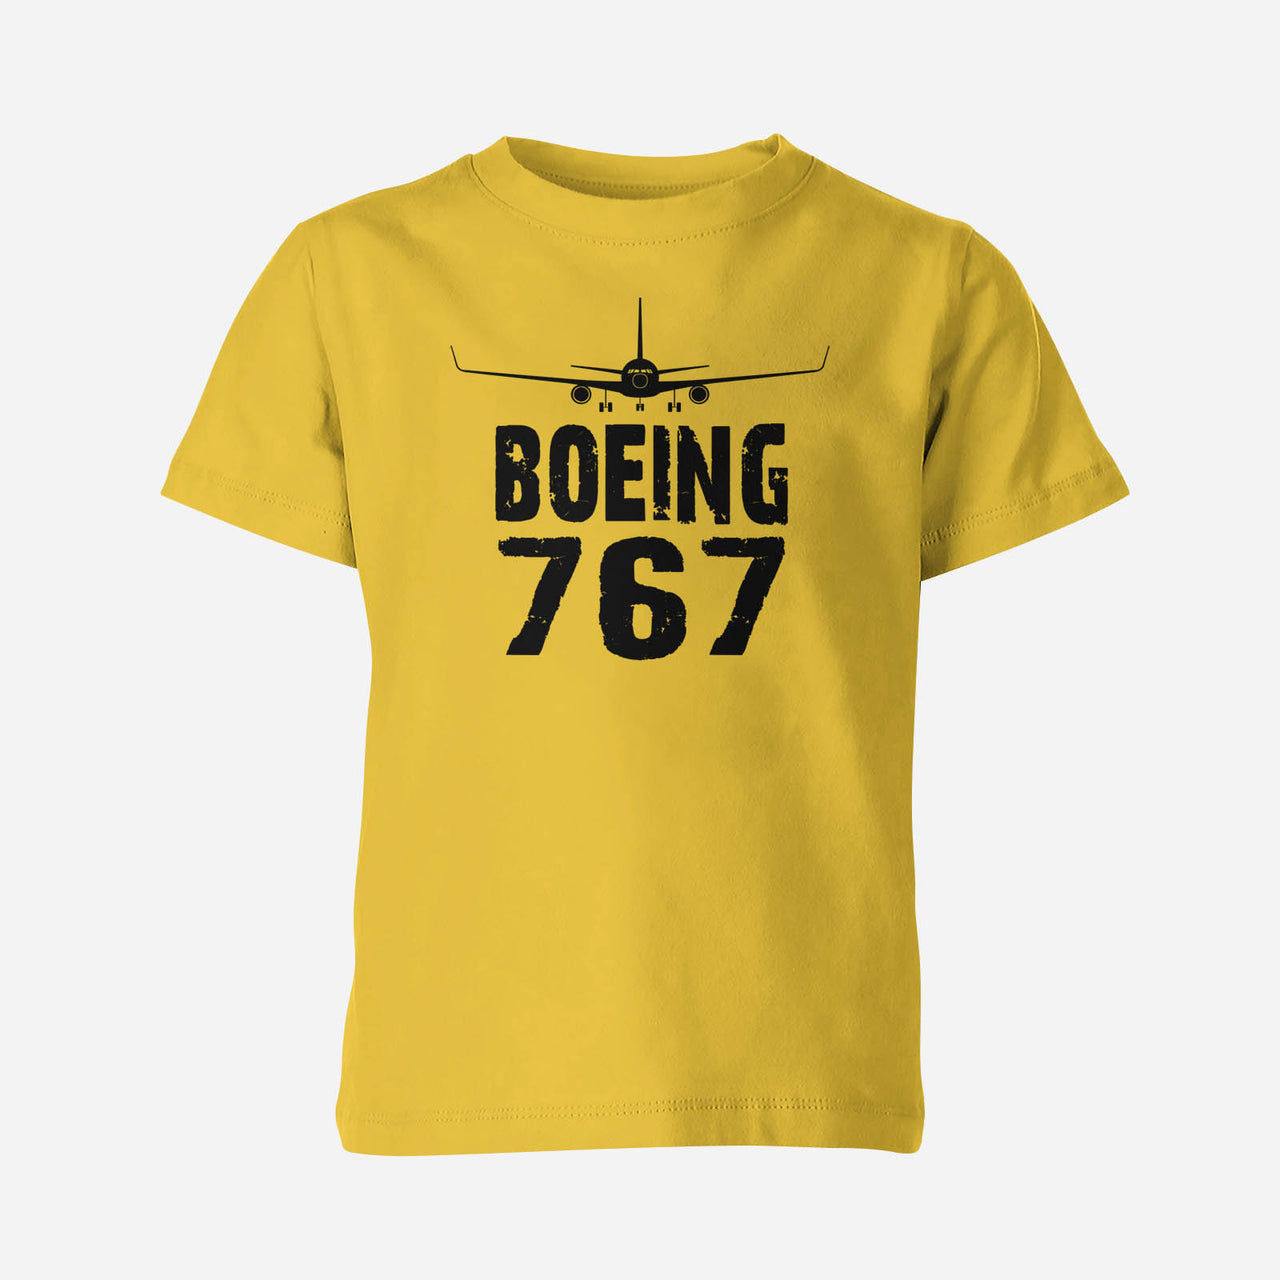 Boeing 767 & Plane Designed Children T-Shirts